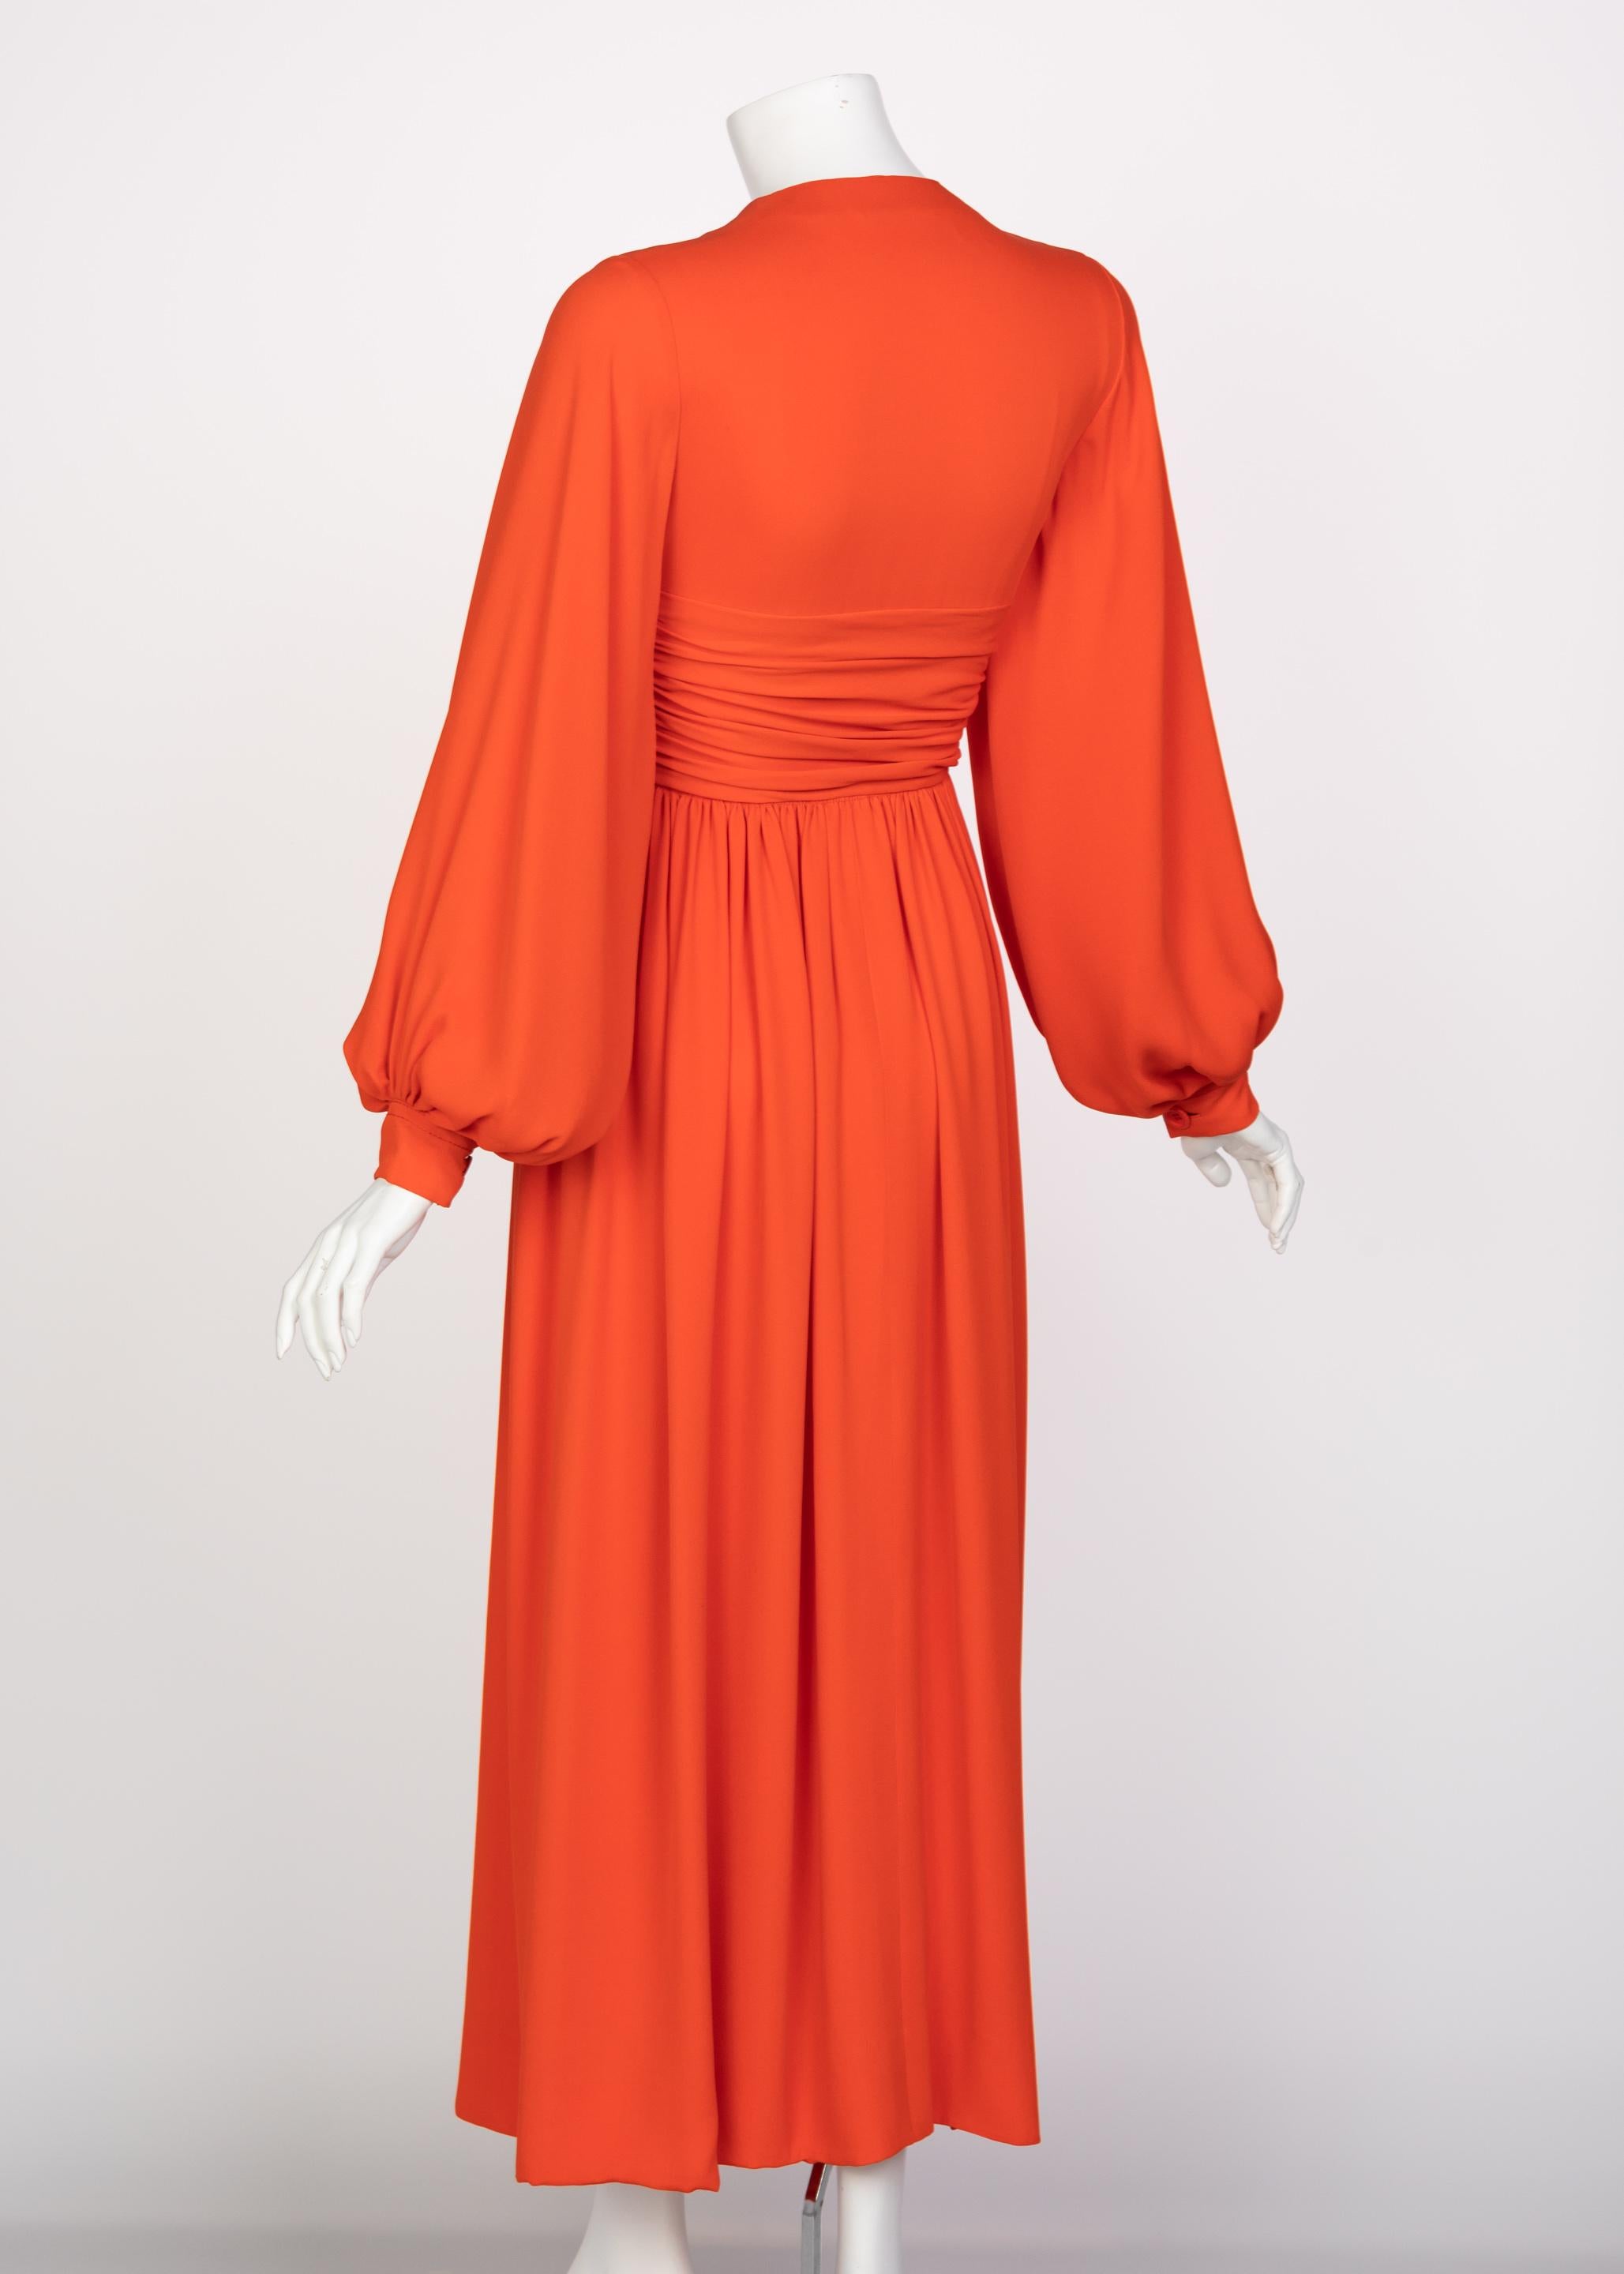 Galanos Orange Silk Plunge Neck Bishop Sleeve Dress, 1970s In Excellent Condition In Boca Raton, FL